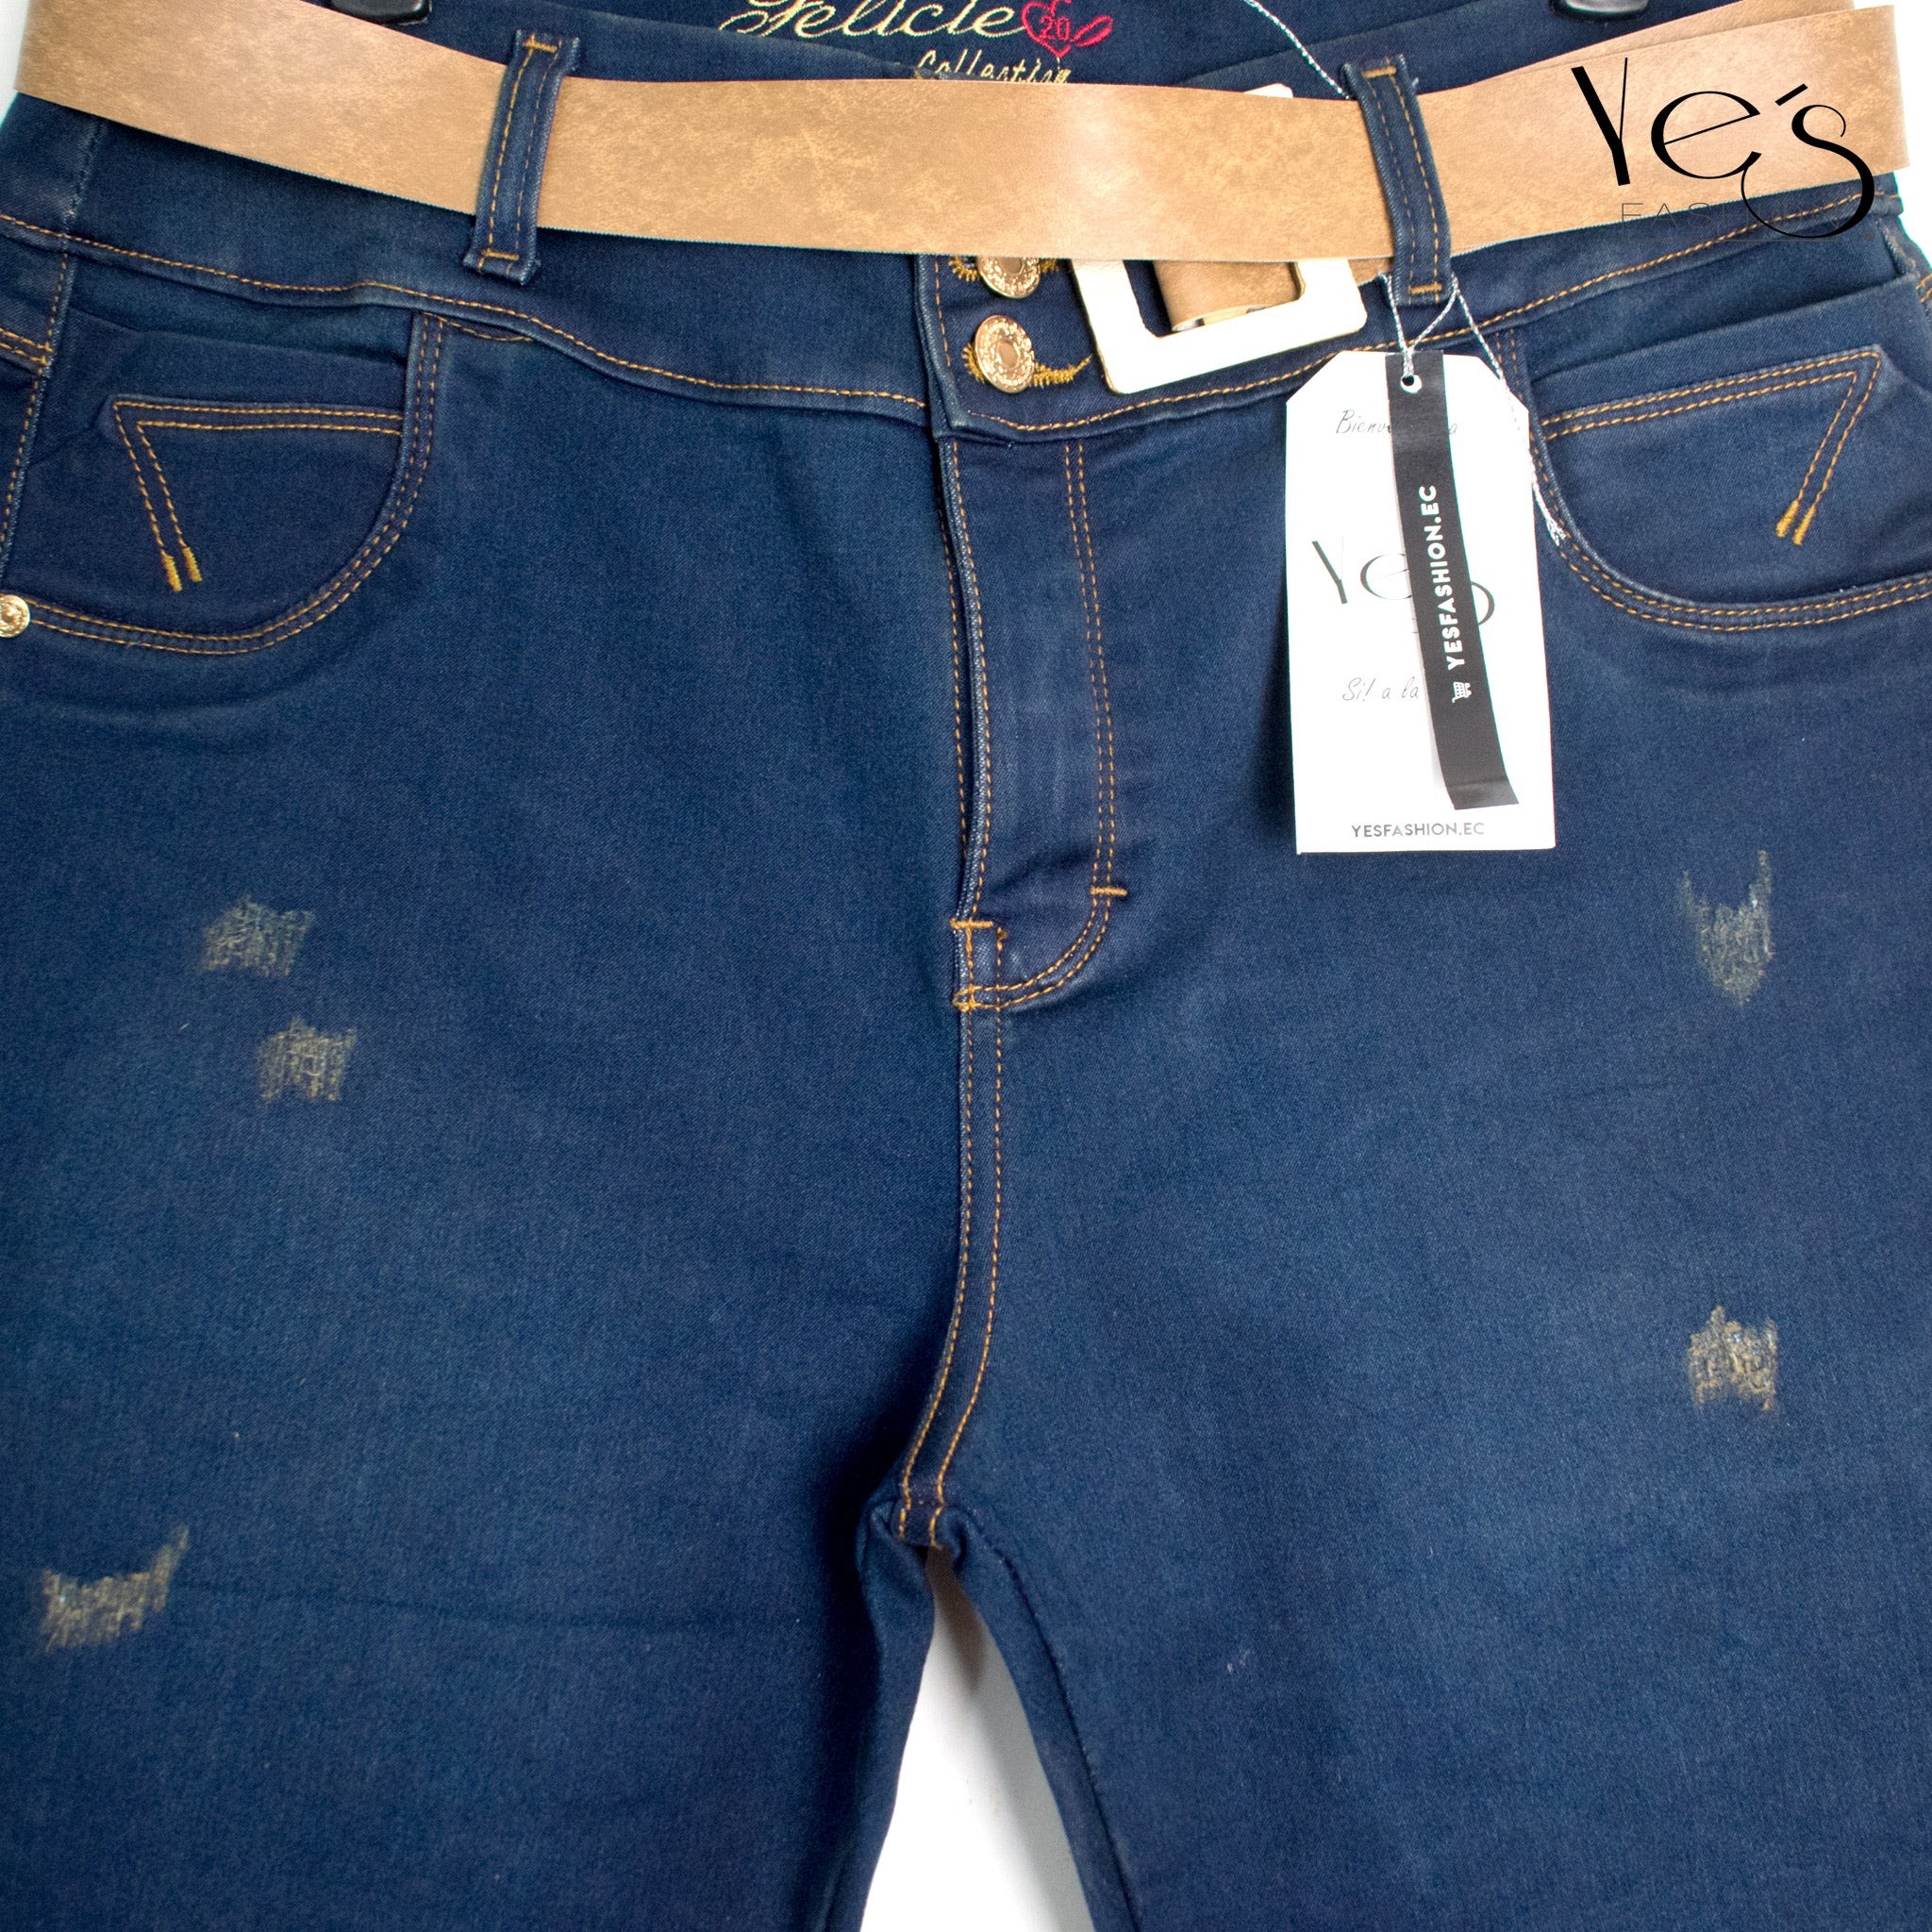 Jeans para Mujer , Plus Denim Trendy - Estilo Moderno y Tallas Extendidas ( Color Azul Verdoso))